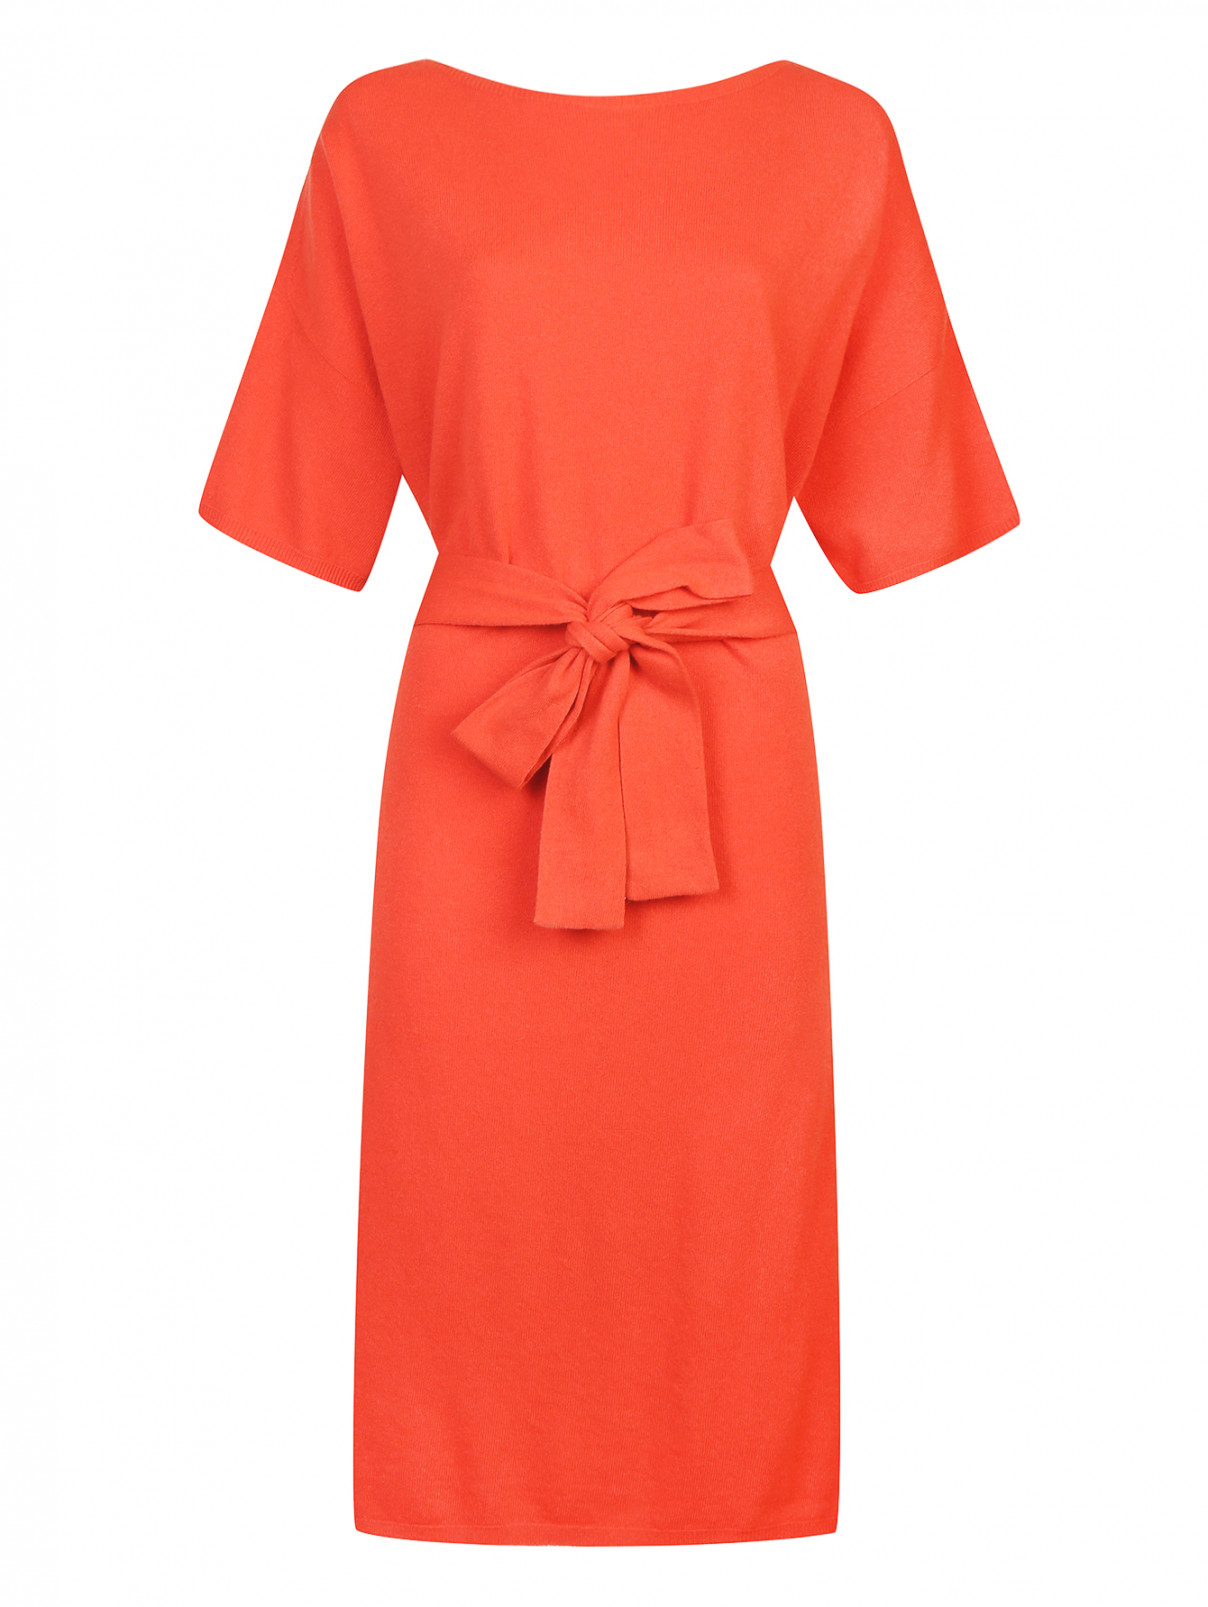 Платье из шерсти трикотажное с поясом Stefanel Cashmere  –  Общий вид  – Цвет:  Оранжевый